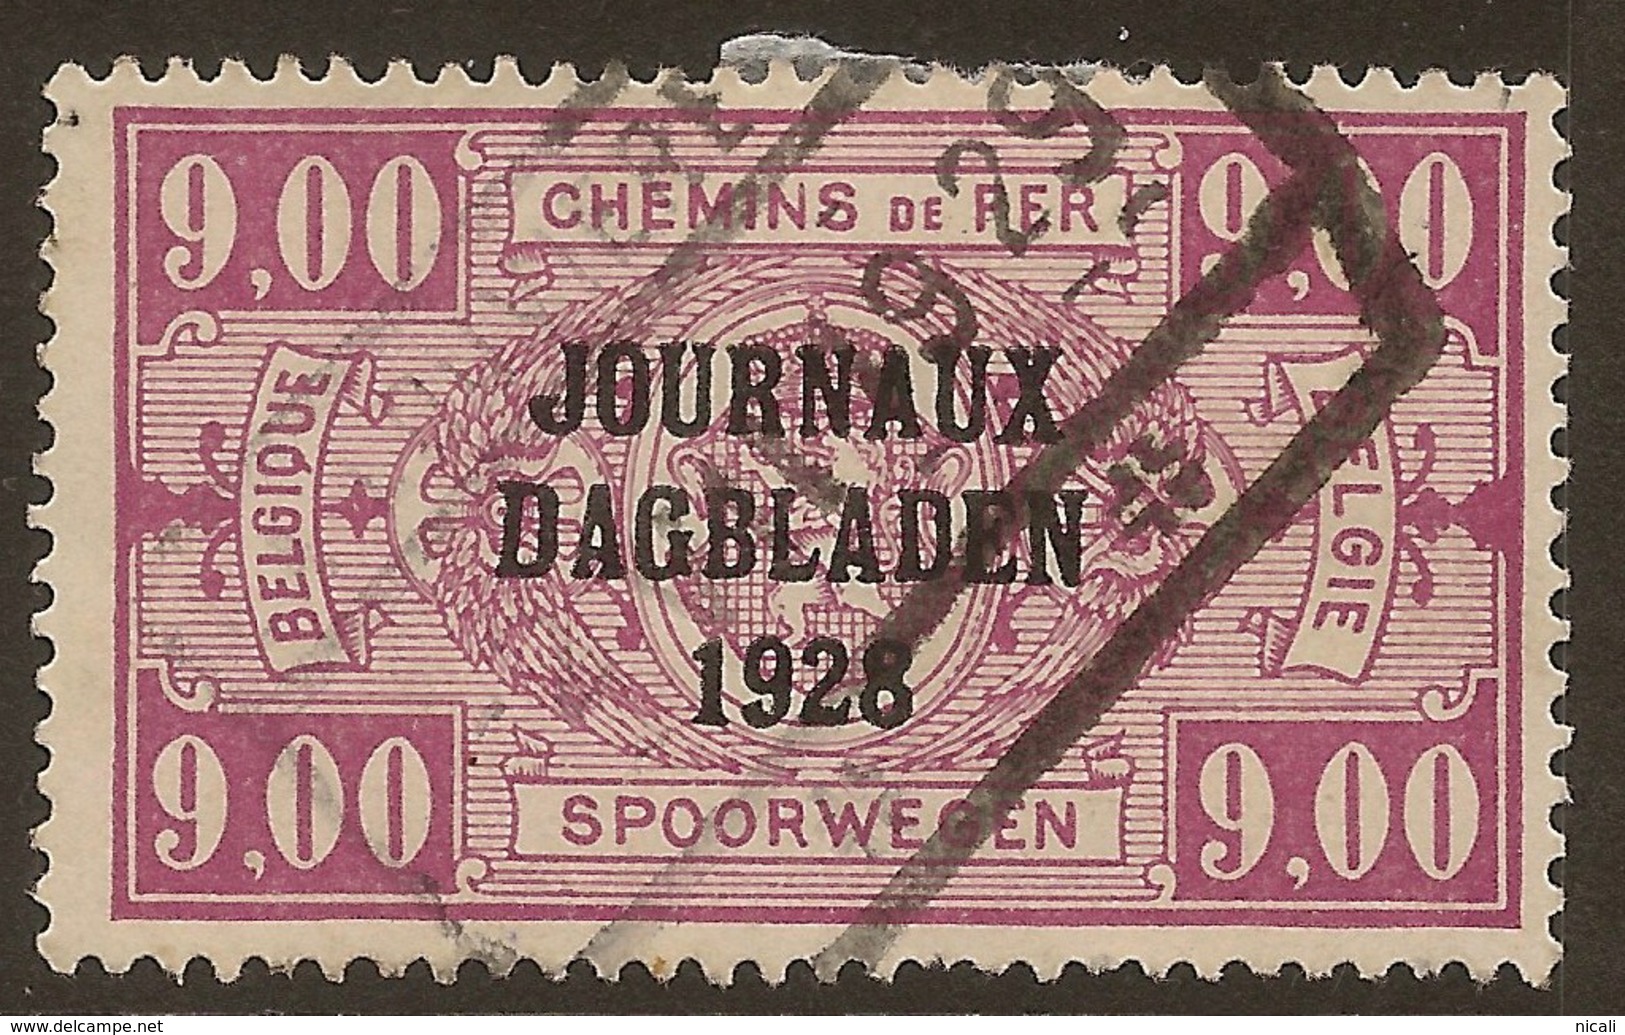 BELGIUM 1928 9f Newspaper Stamp SG N458 U #JU262 - Periódicos [JO]